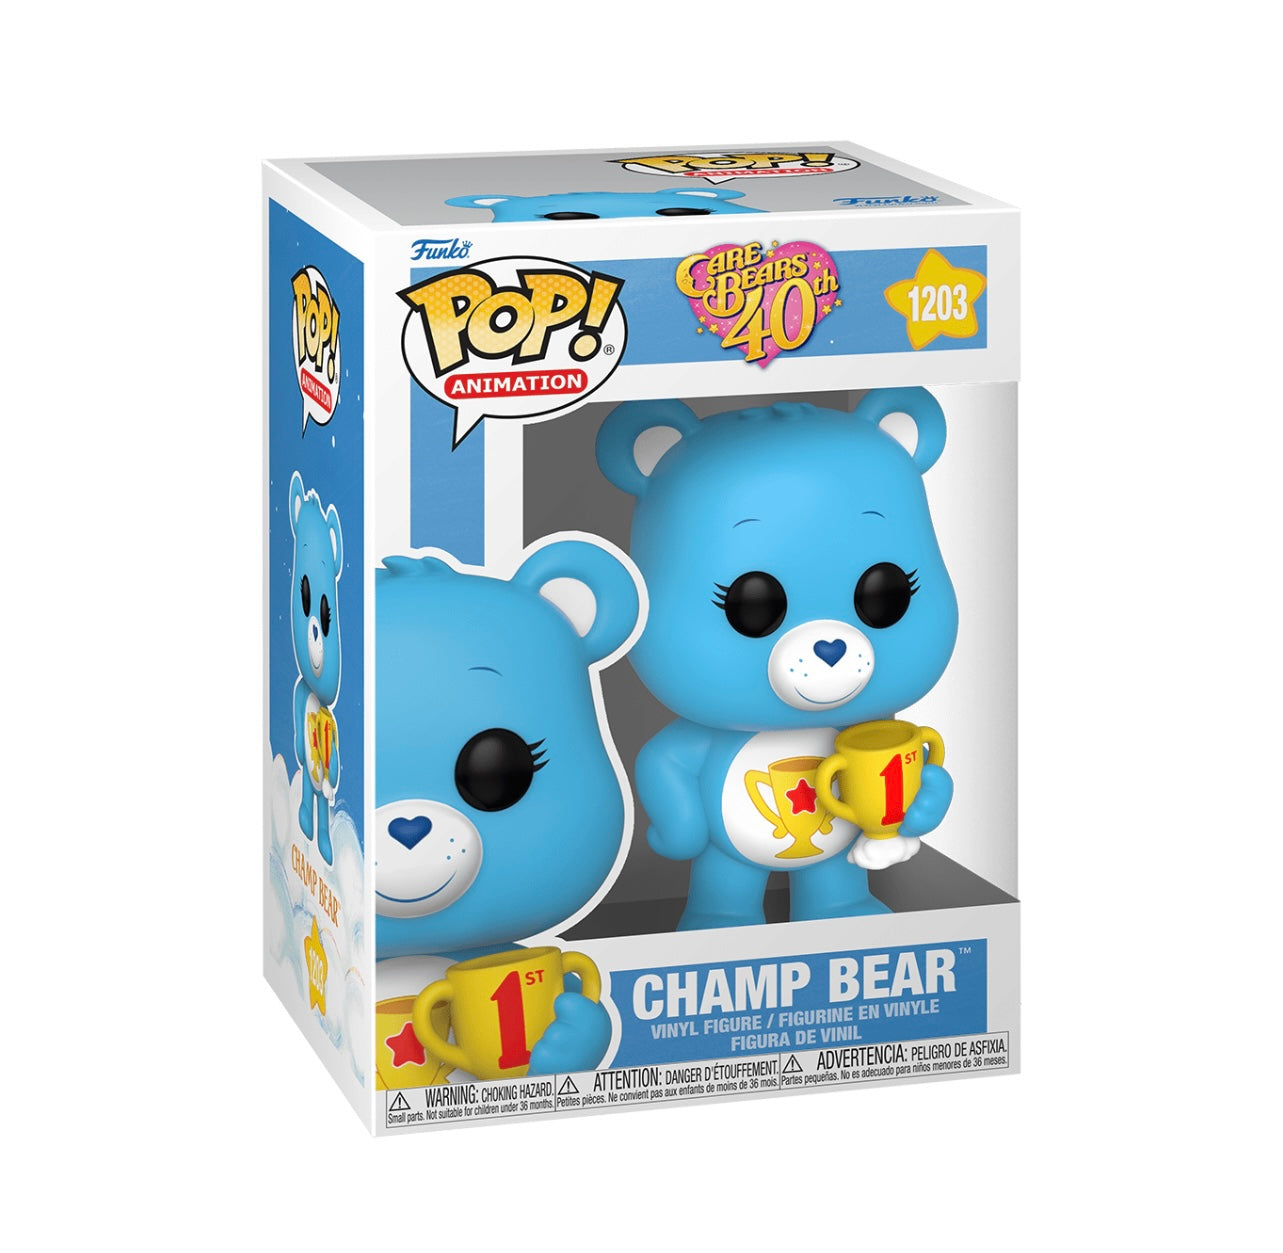 POP! Anime Care Bears Champ Bear #1203